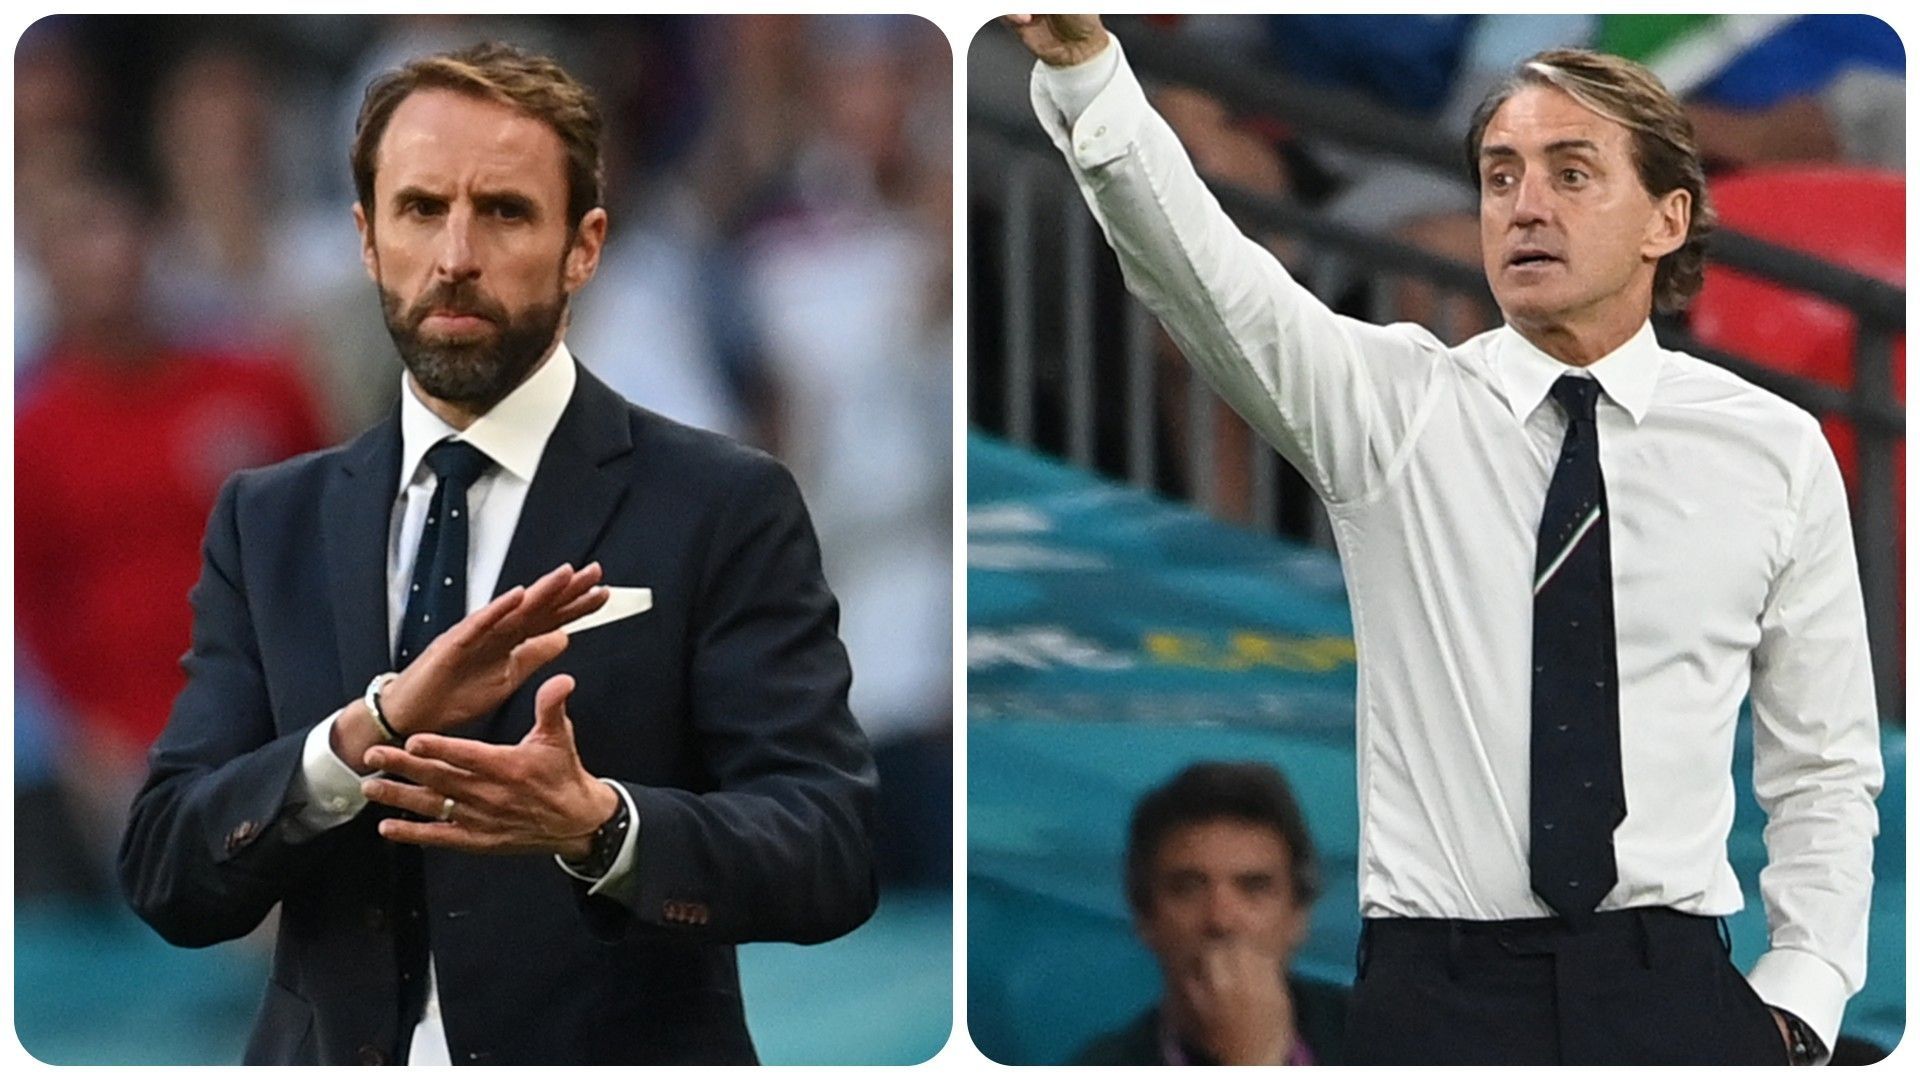 Ce dimanche, l'Angleterre affronte l'Italie en finale de l'Euro. 